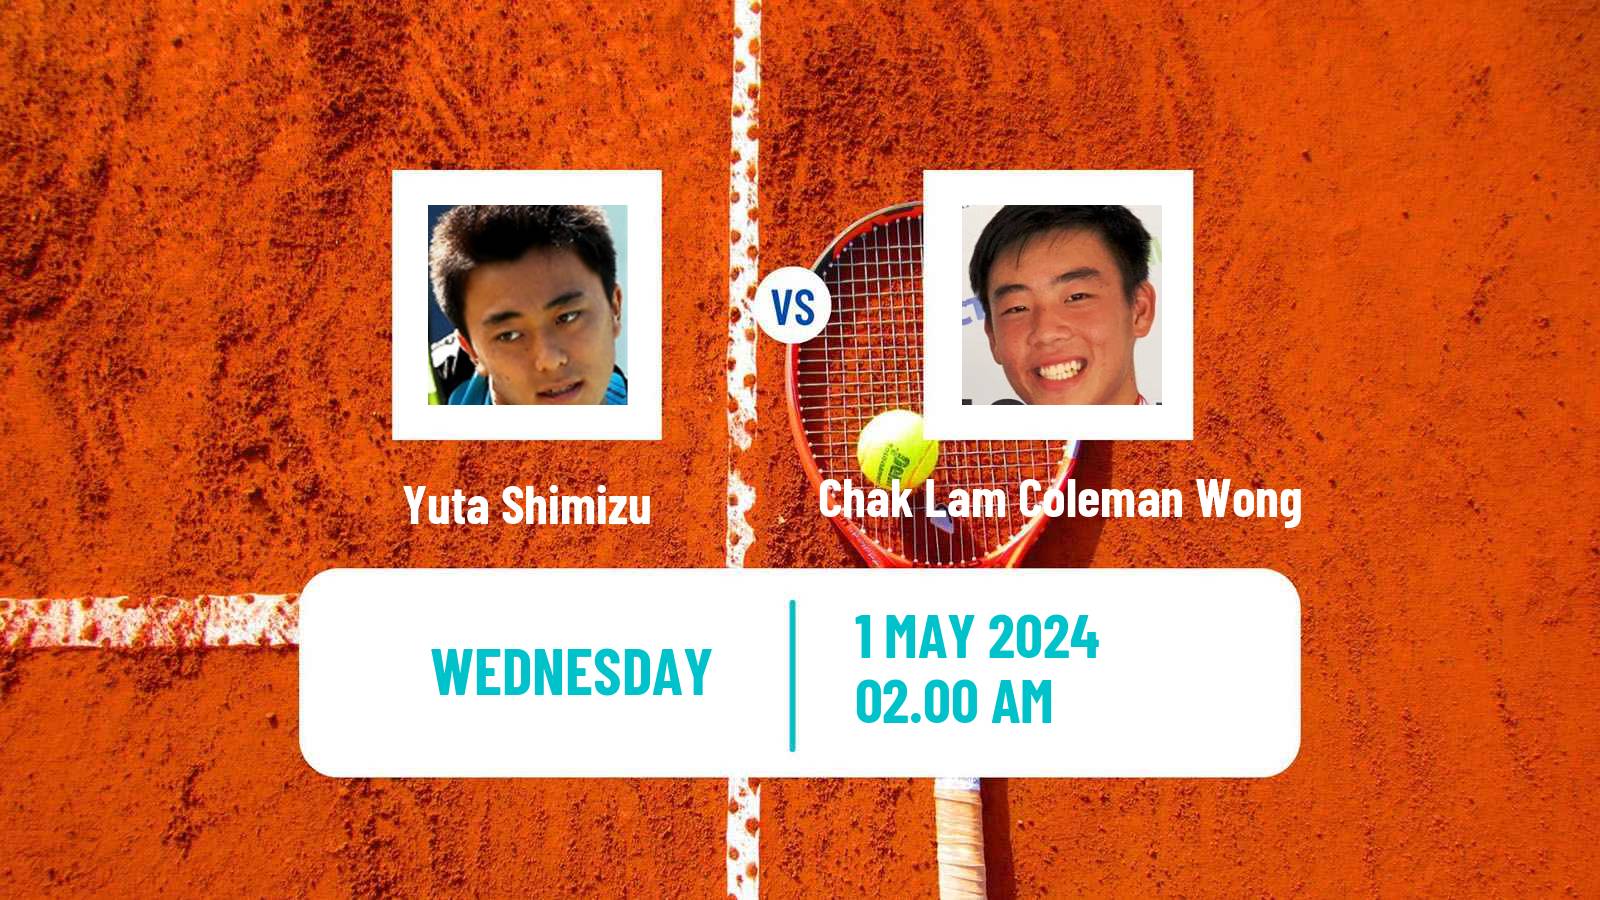 Tennis Guangzhou Challenger Men Yuta Shimizu - Chak Lam Coleman Wong